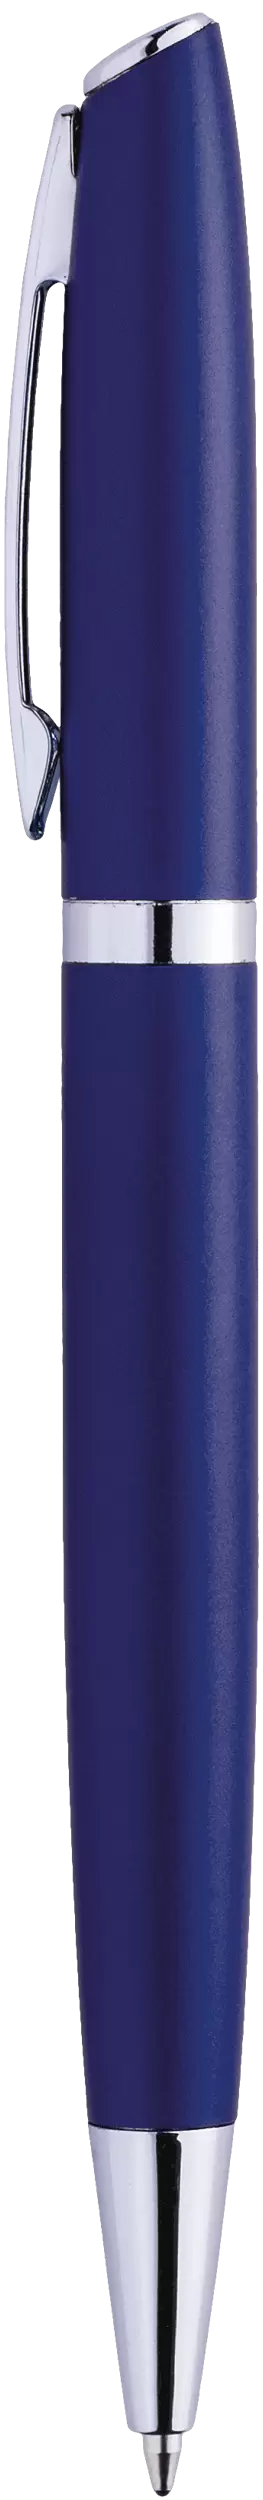 Ручка VESTA Темно-синяя 1120-14